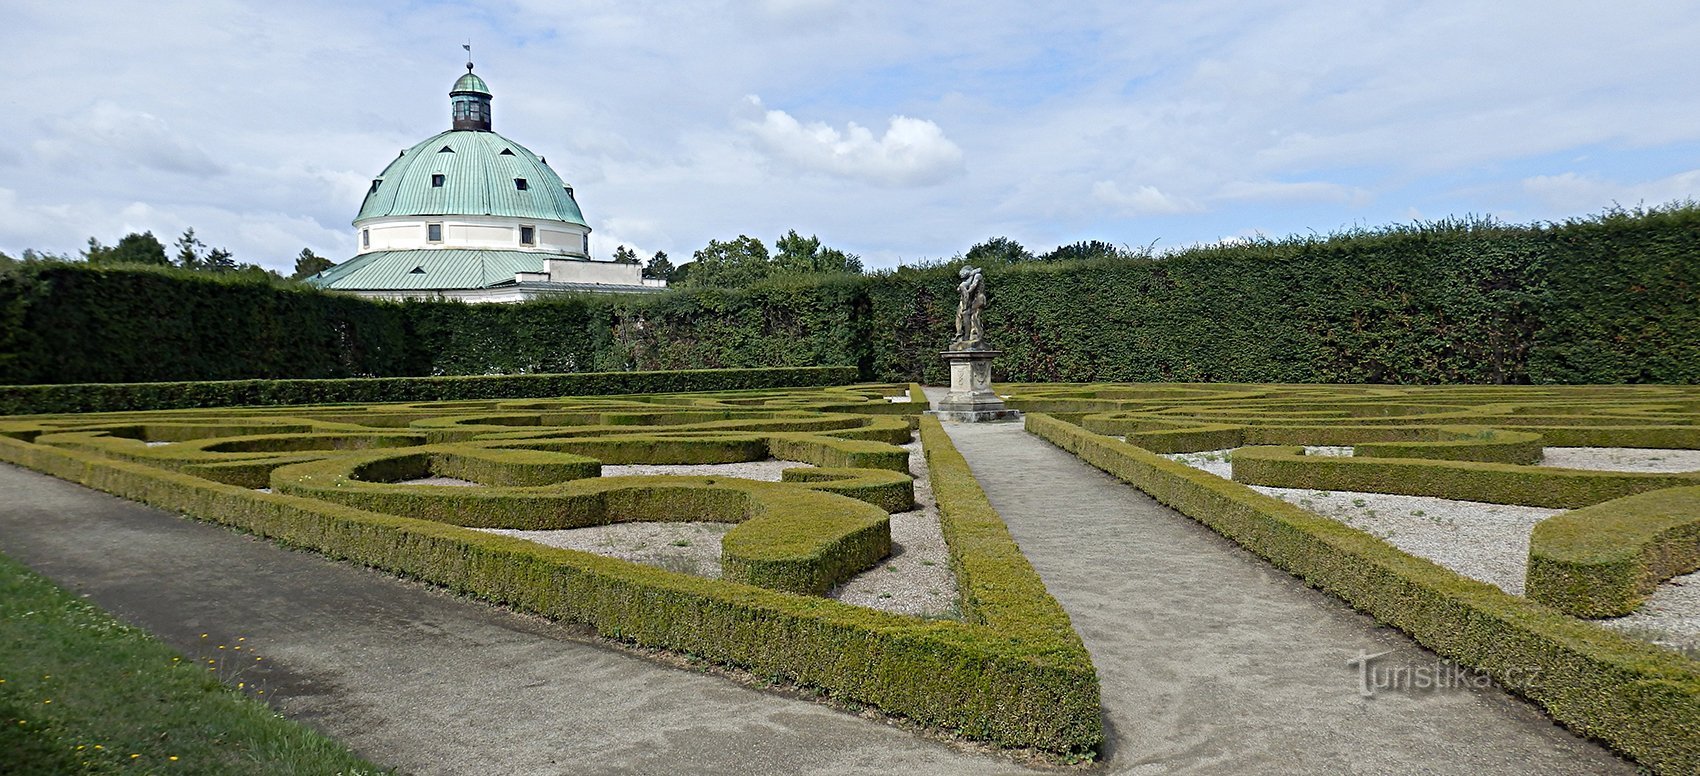 Květná zahrada je jediným parkem tohoto typu v celé Evropě